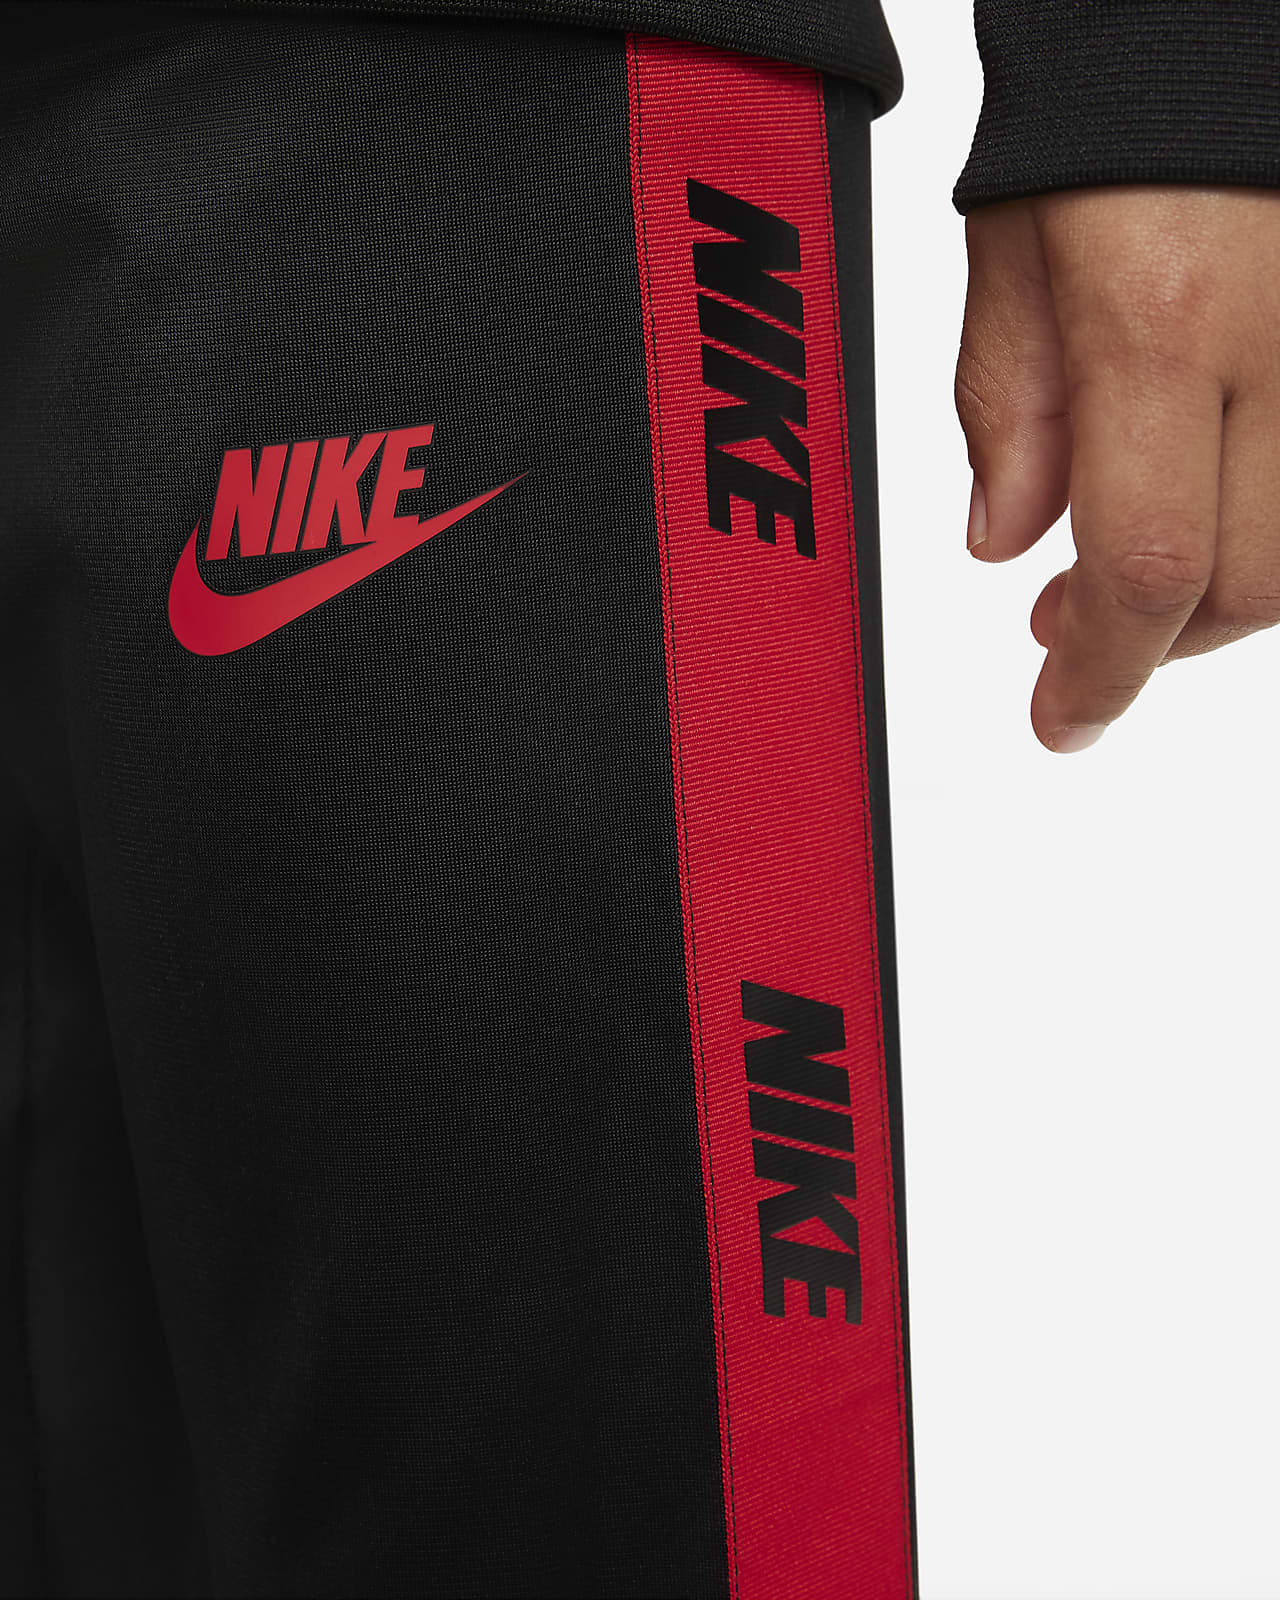 Methode struik richting Nike Trainingspak voor kleuters. Nike NL